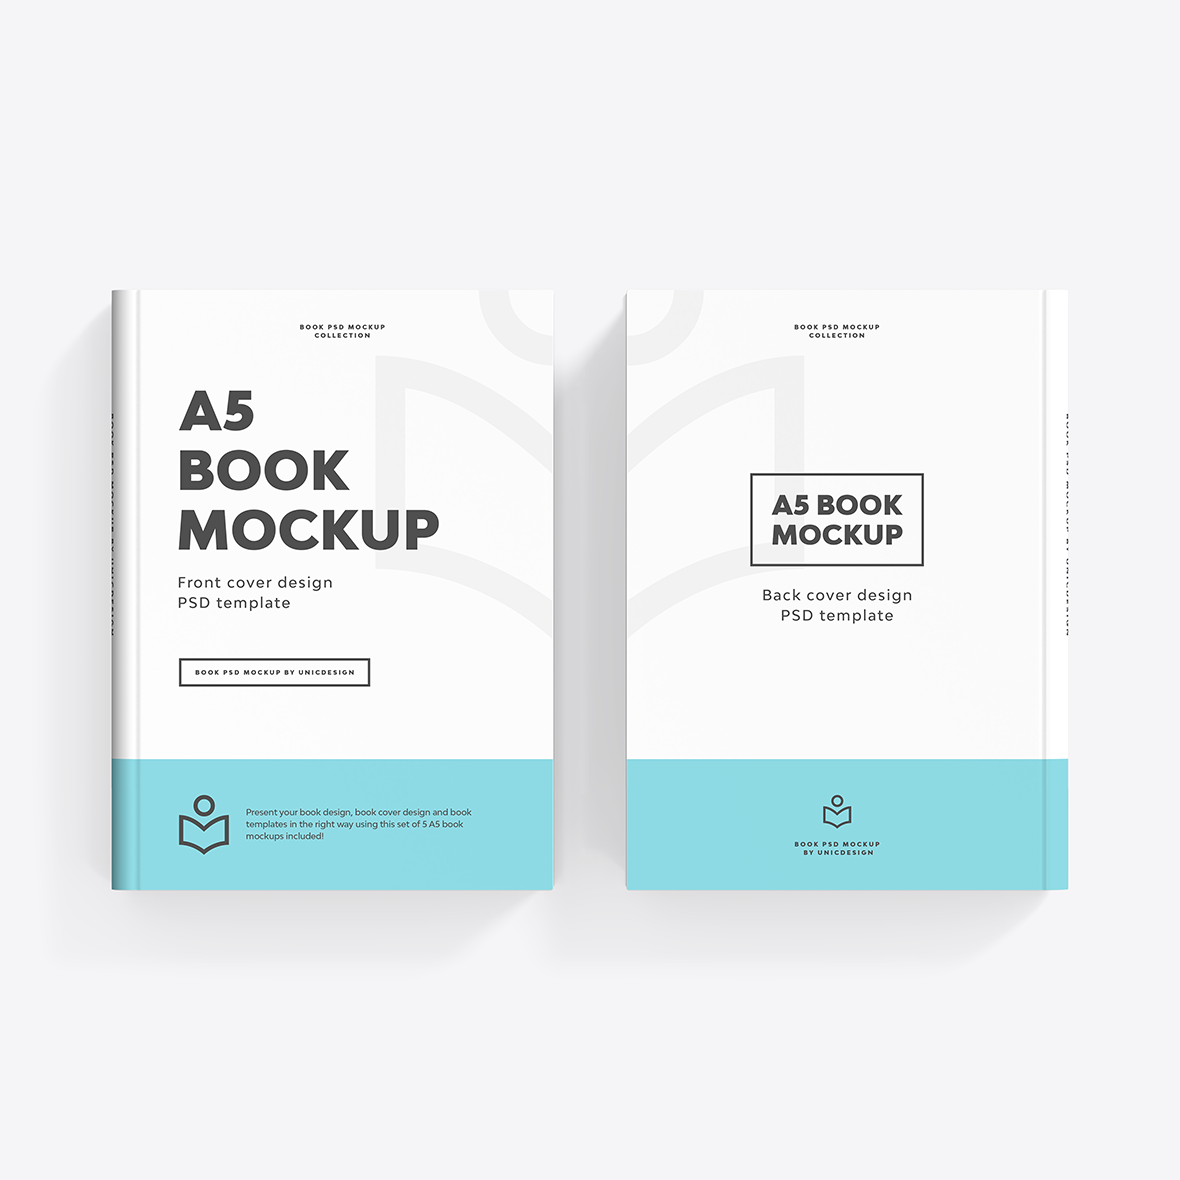 A5 Book Mockup